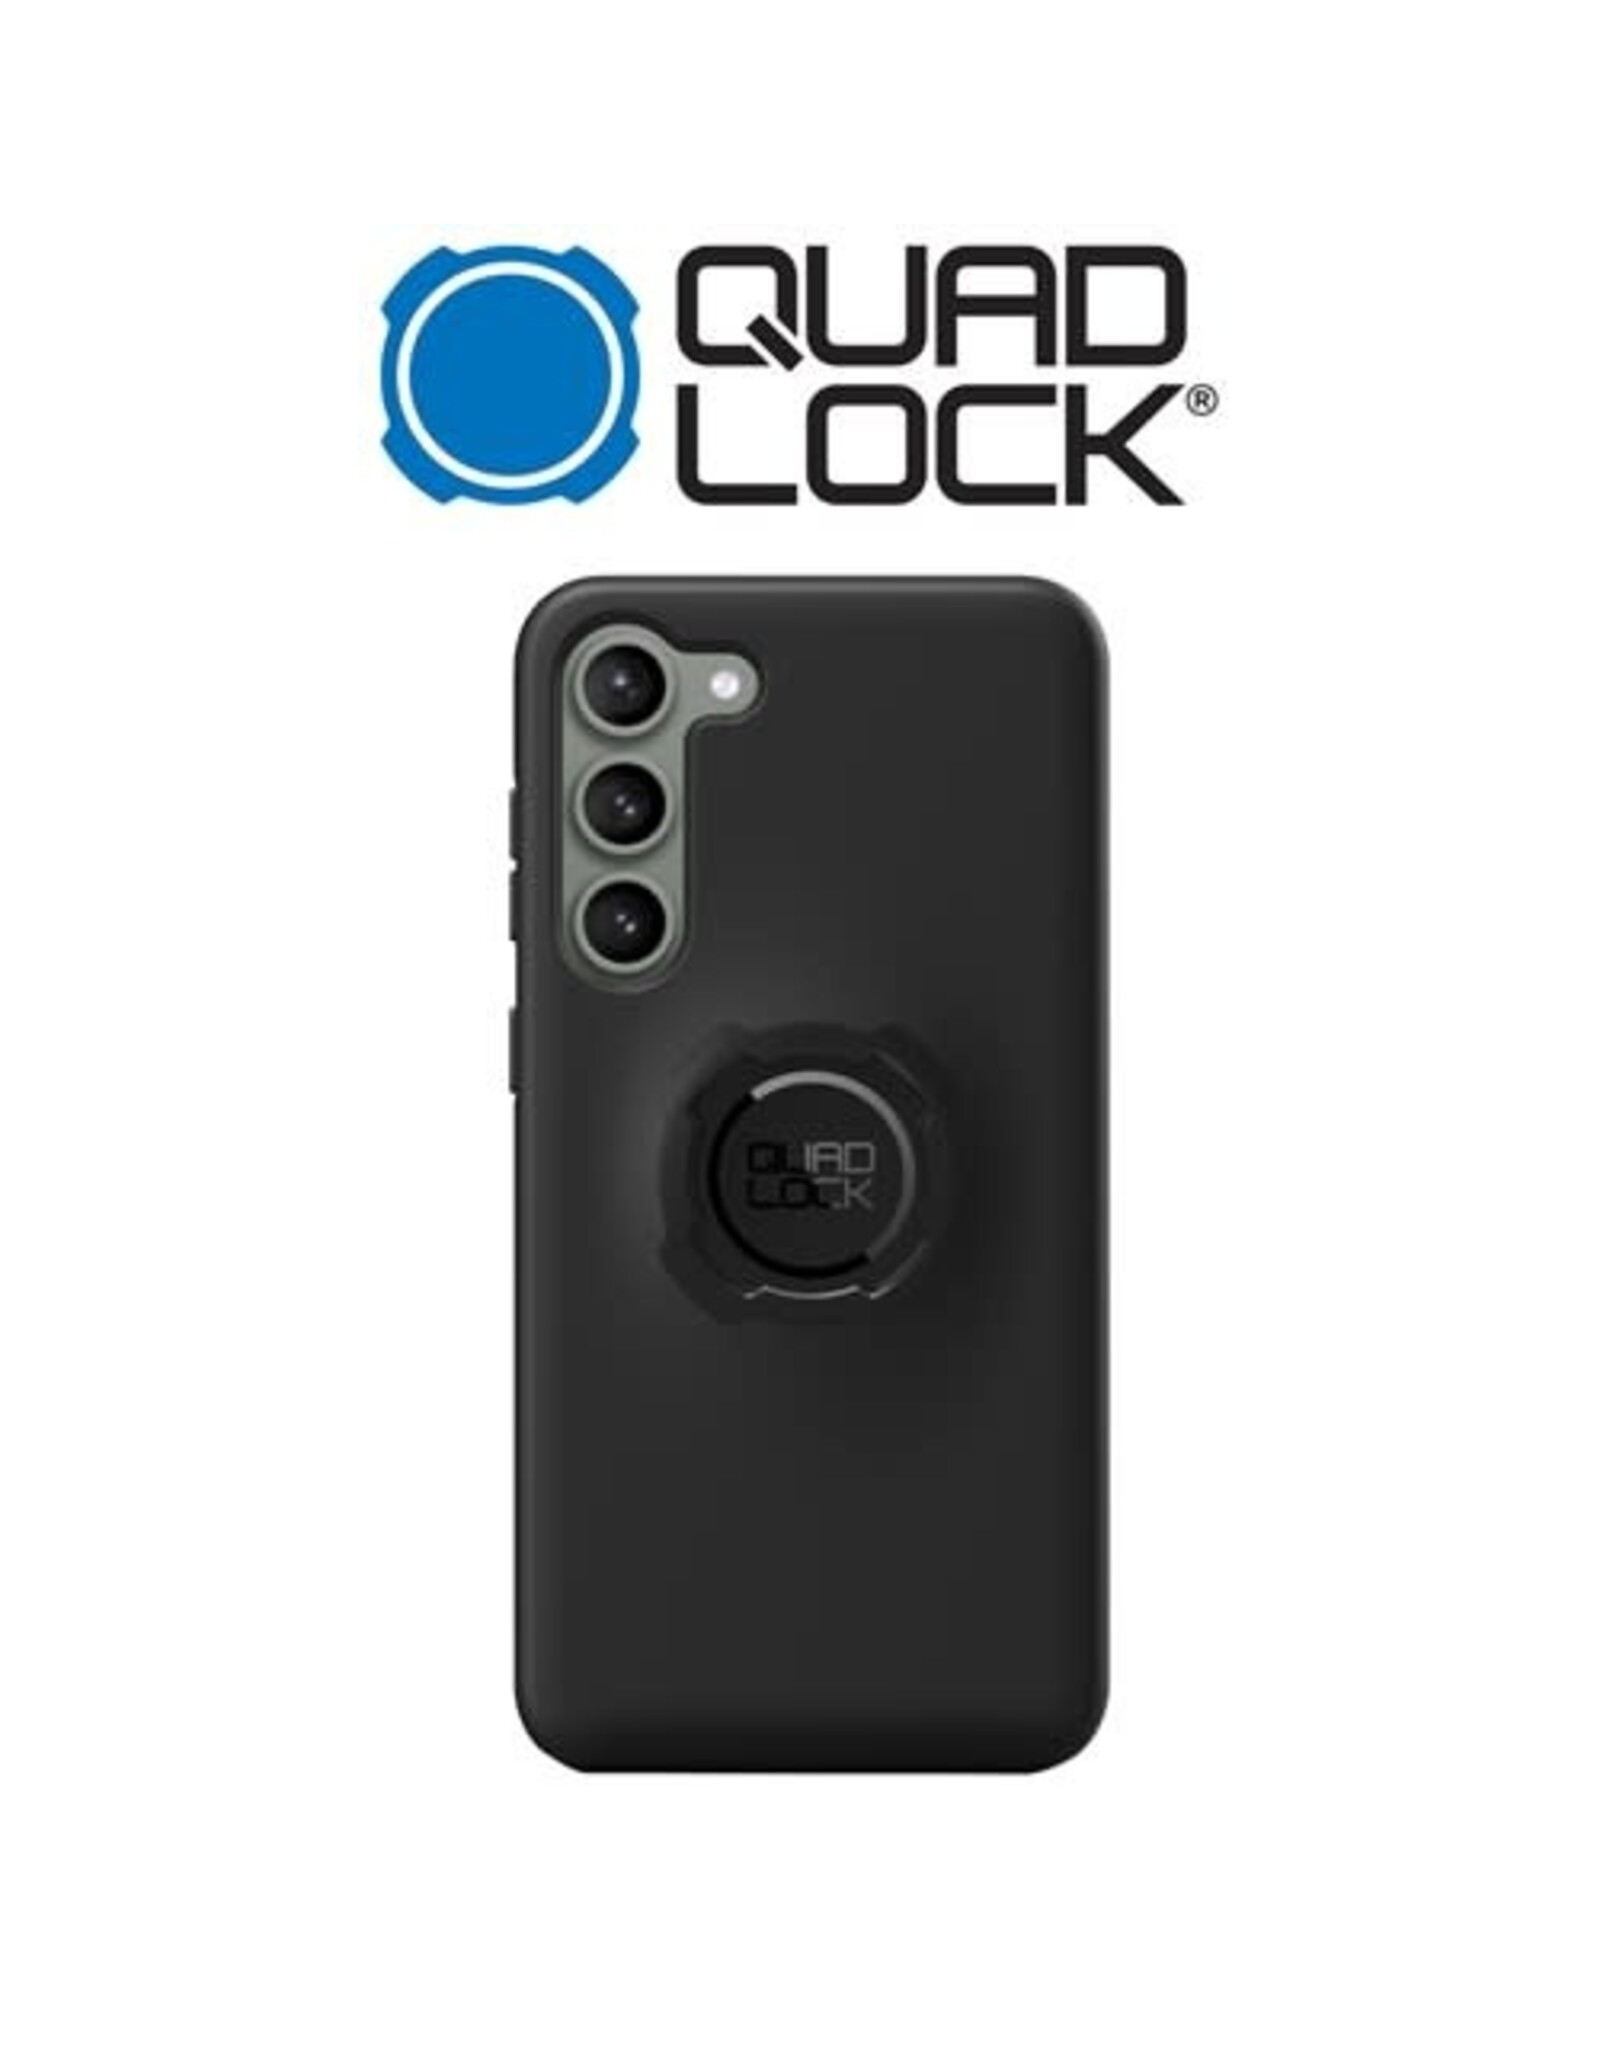 QUAD LOCK QUAD LOCK FOR GALAXY S23 PHONE CASE